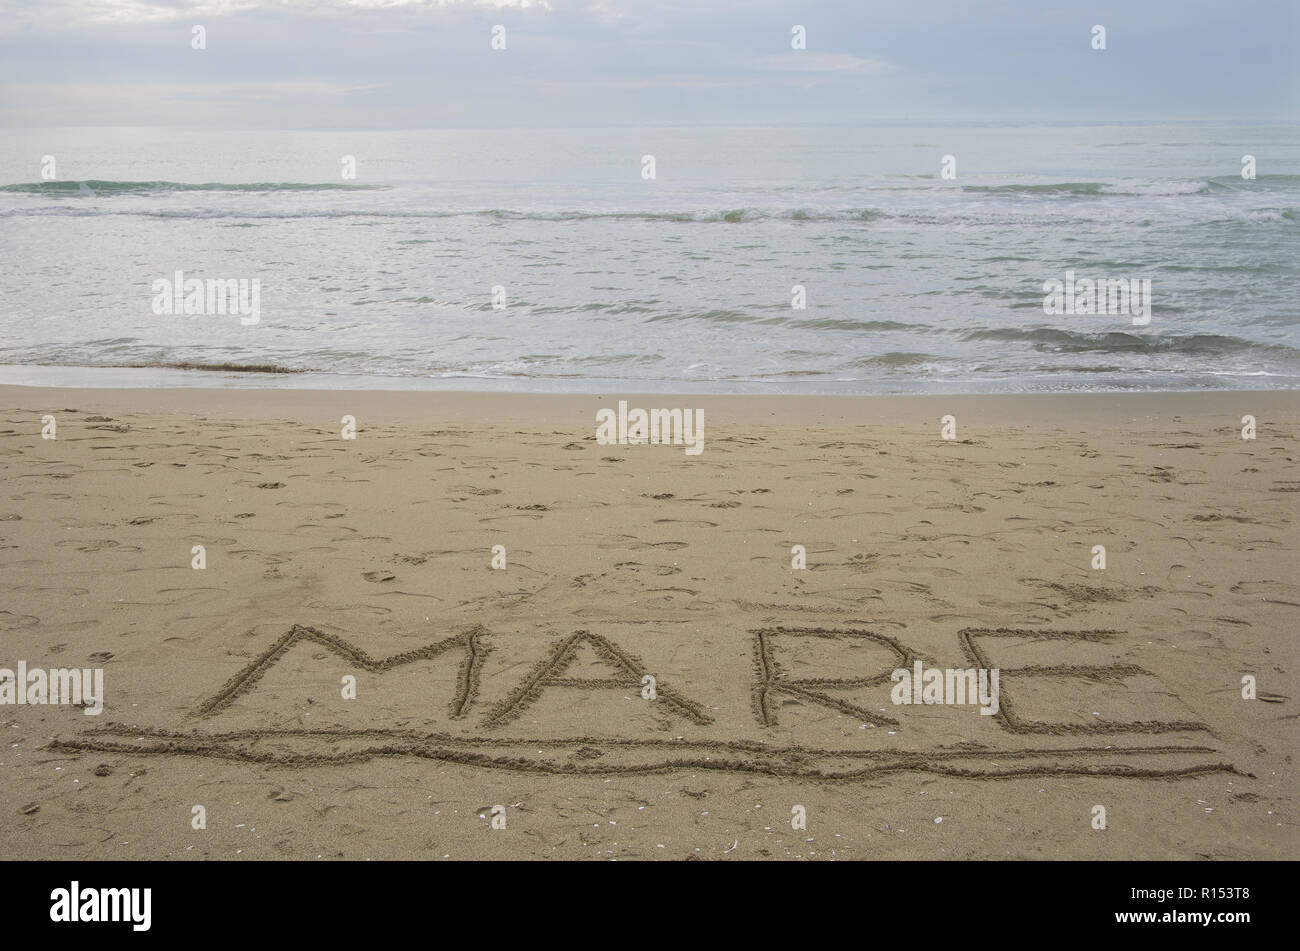 Mondo 'mare' mare in italiano scritto a mano ha sottolineato sulla sabbia acqua con piccole onde in background Foto Stock